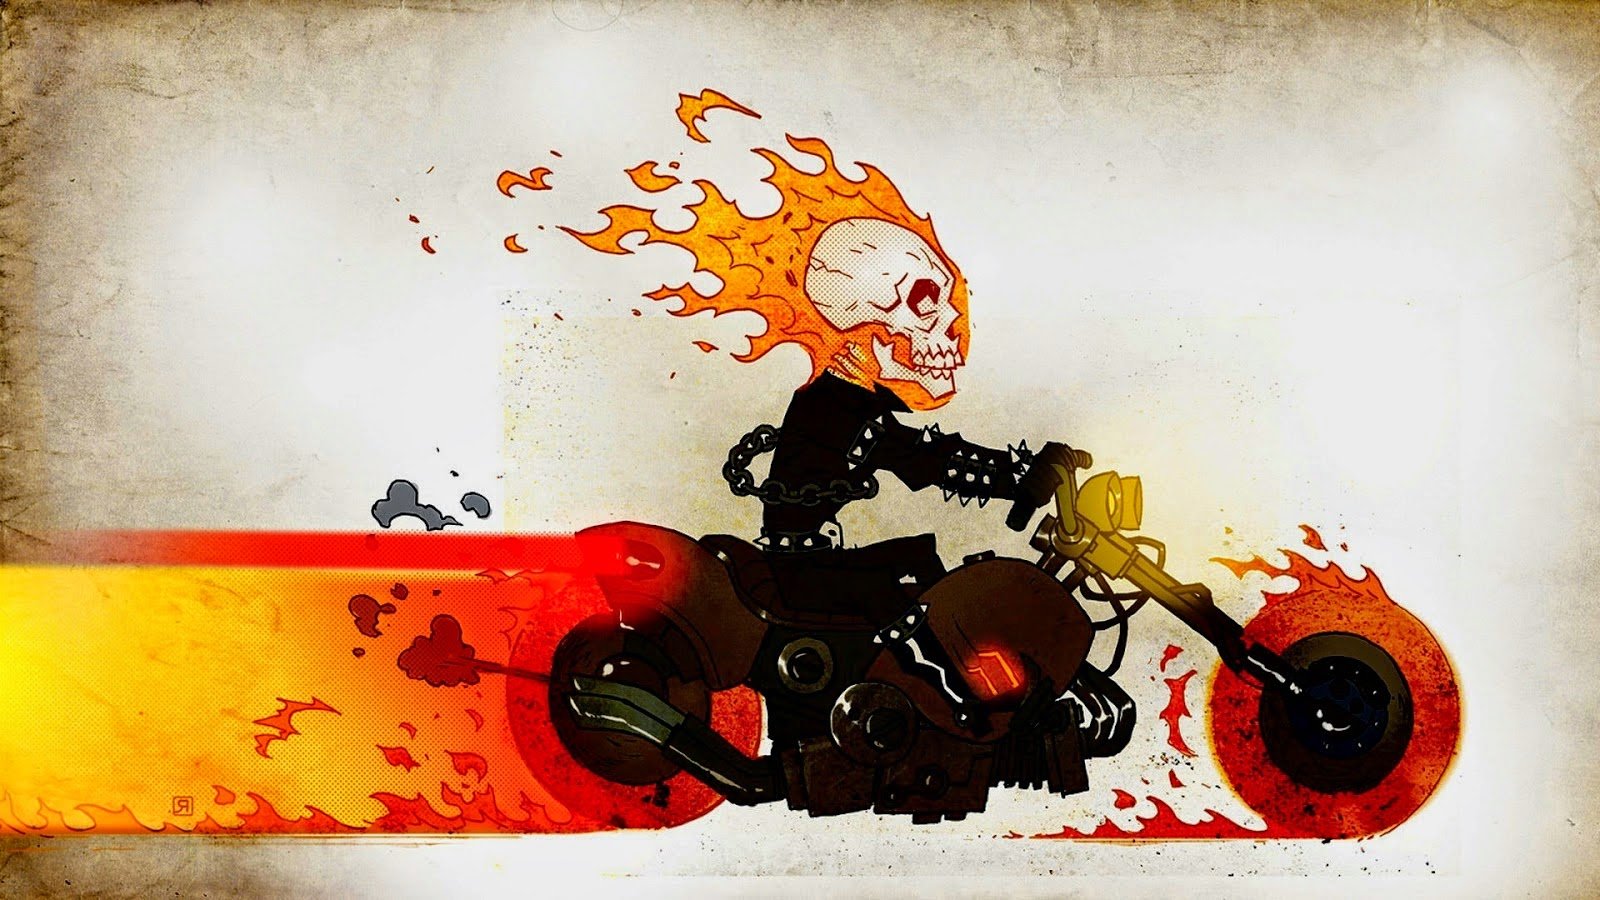 ghost rider hd wallpapers ghost rider hd wallpapers ghost rider hd